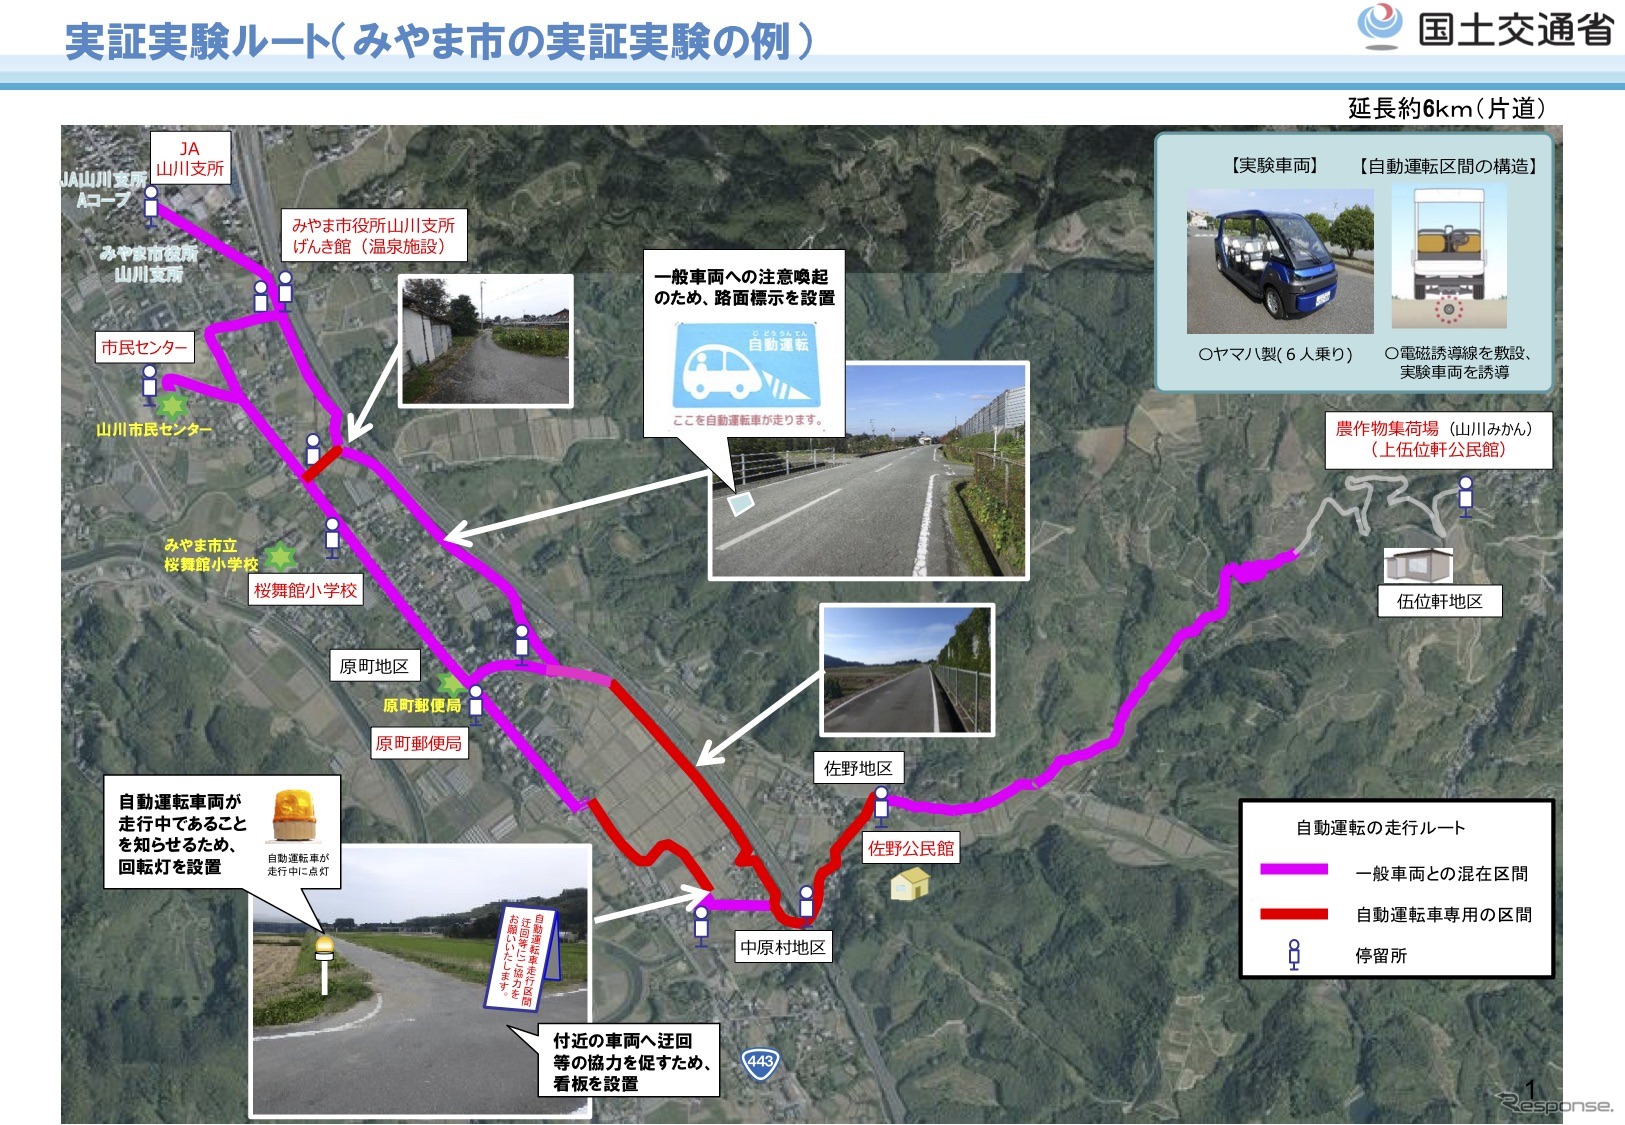 福岡県みやま市で50日間の長期間実施する自動運転サービス実証実験